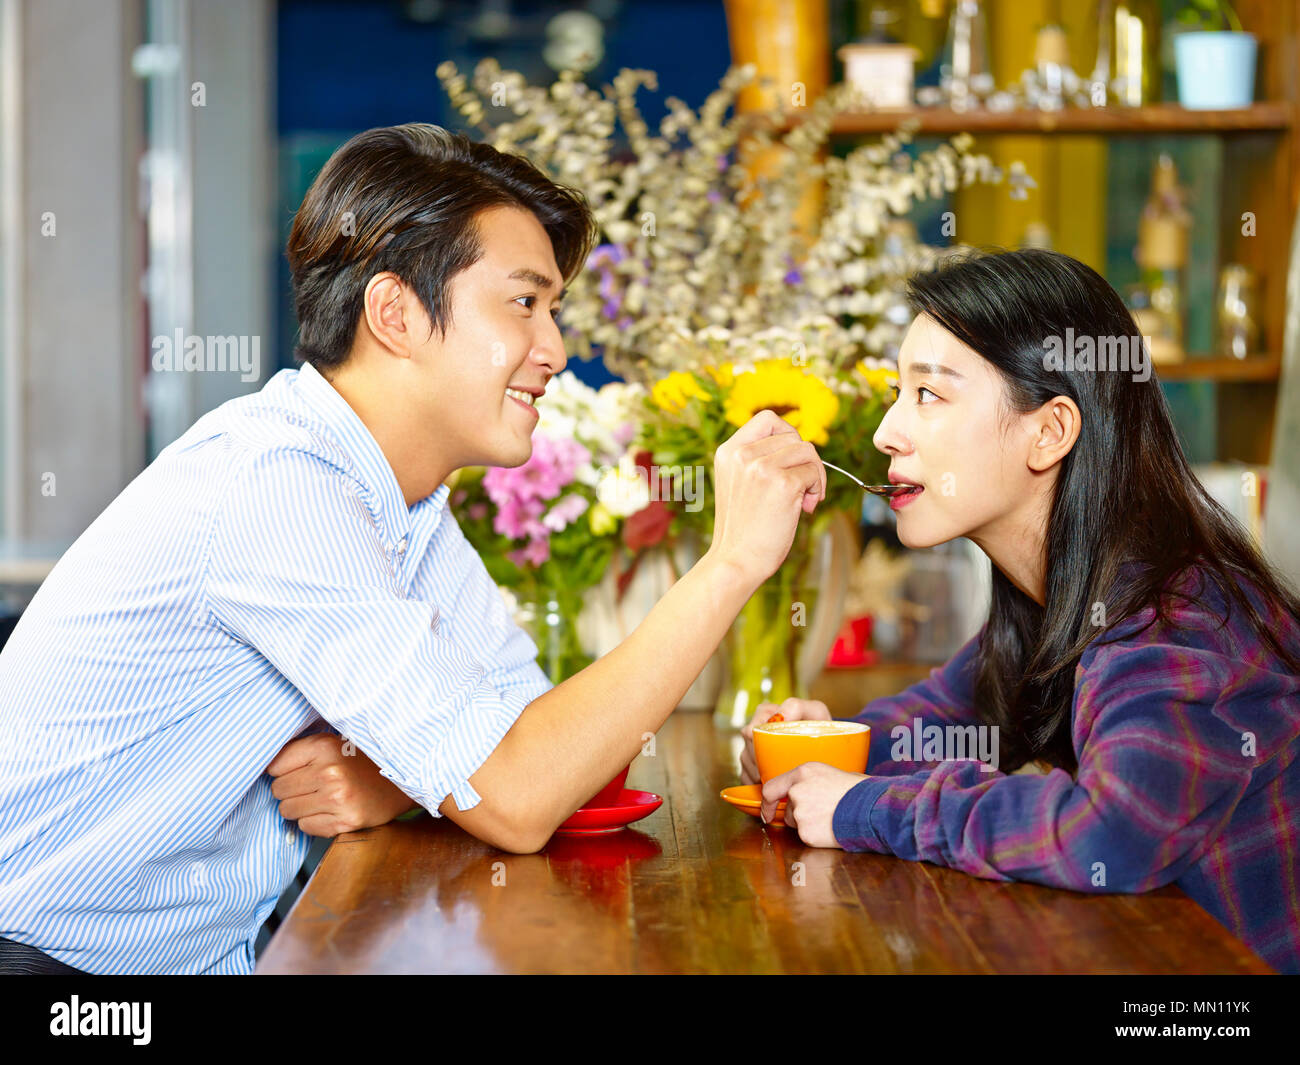 Aimer les jeunes et ludique asian couple having fun in coffee shop Banque D'Images